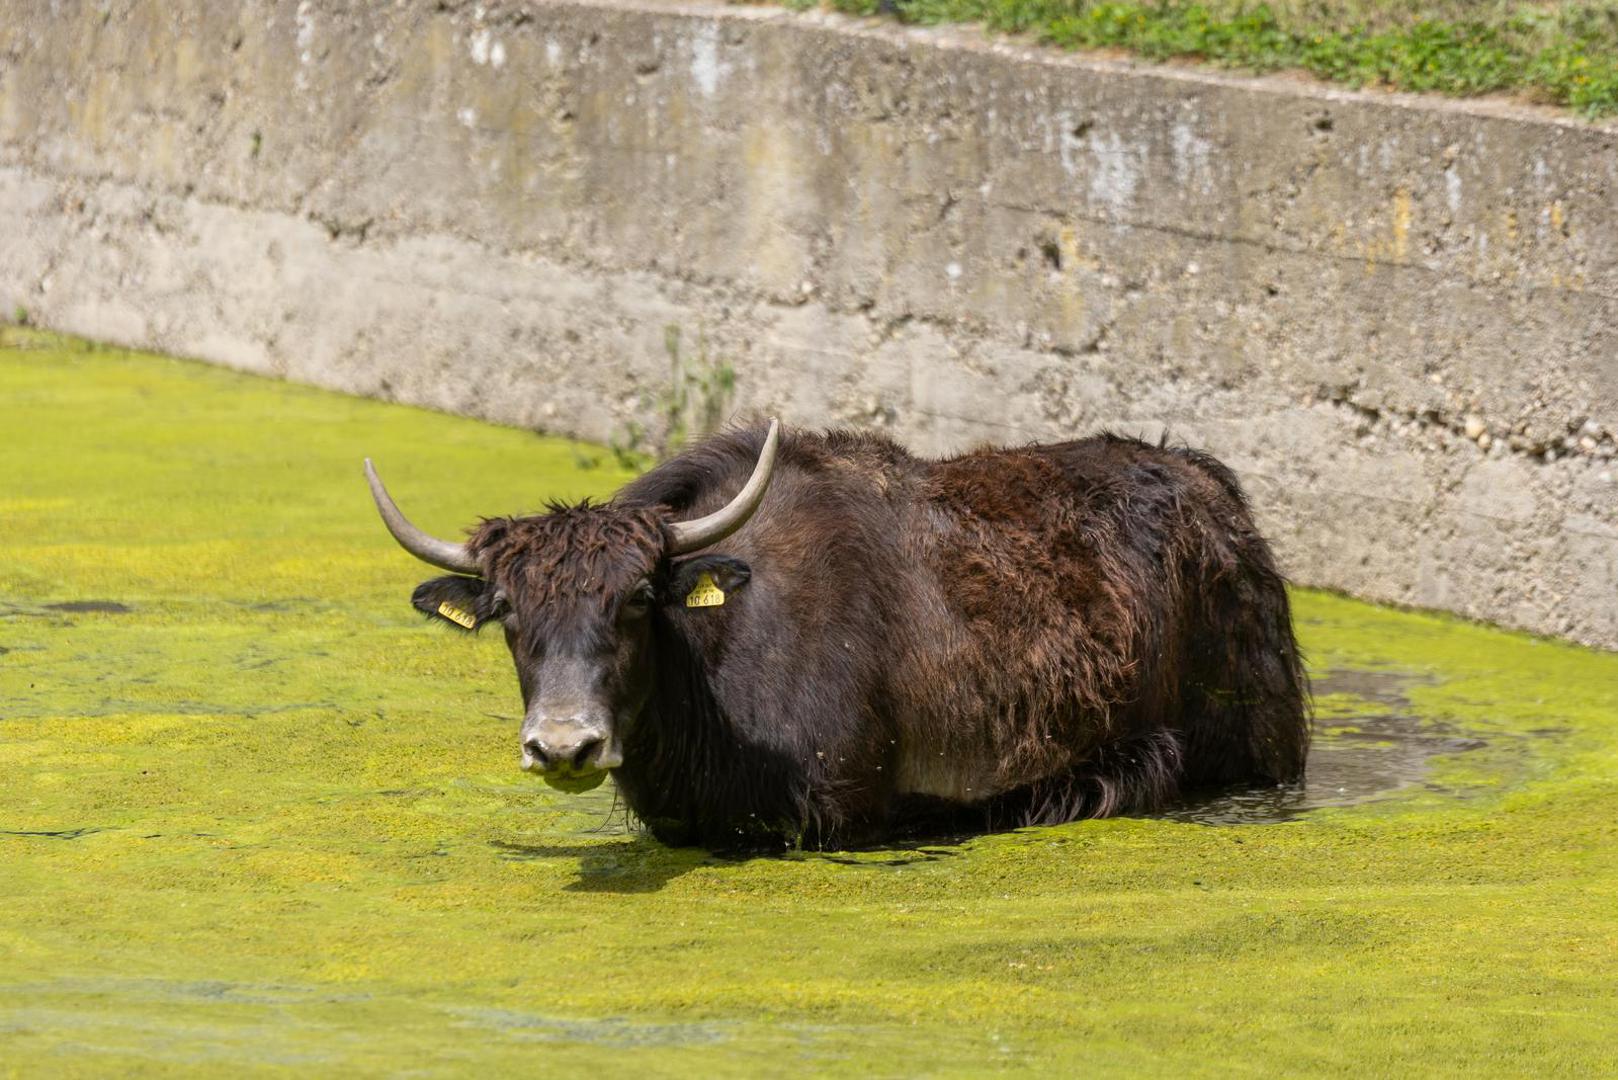 Voda se pojavila u nižim dijelovima ZOO vrta, no bizoni su ju iskoristili za kupanje.